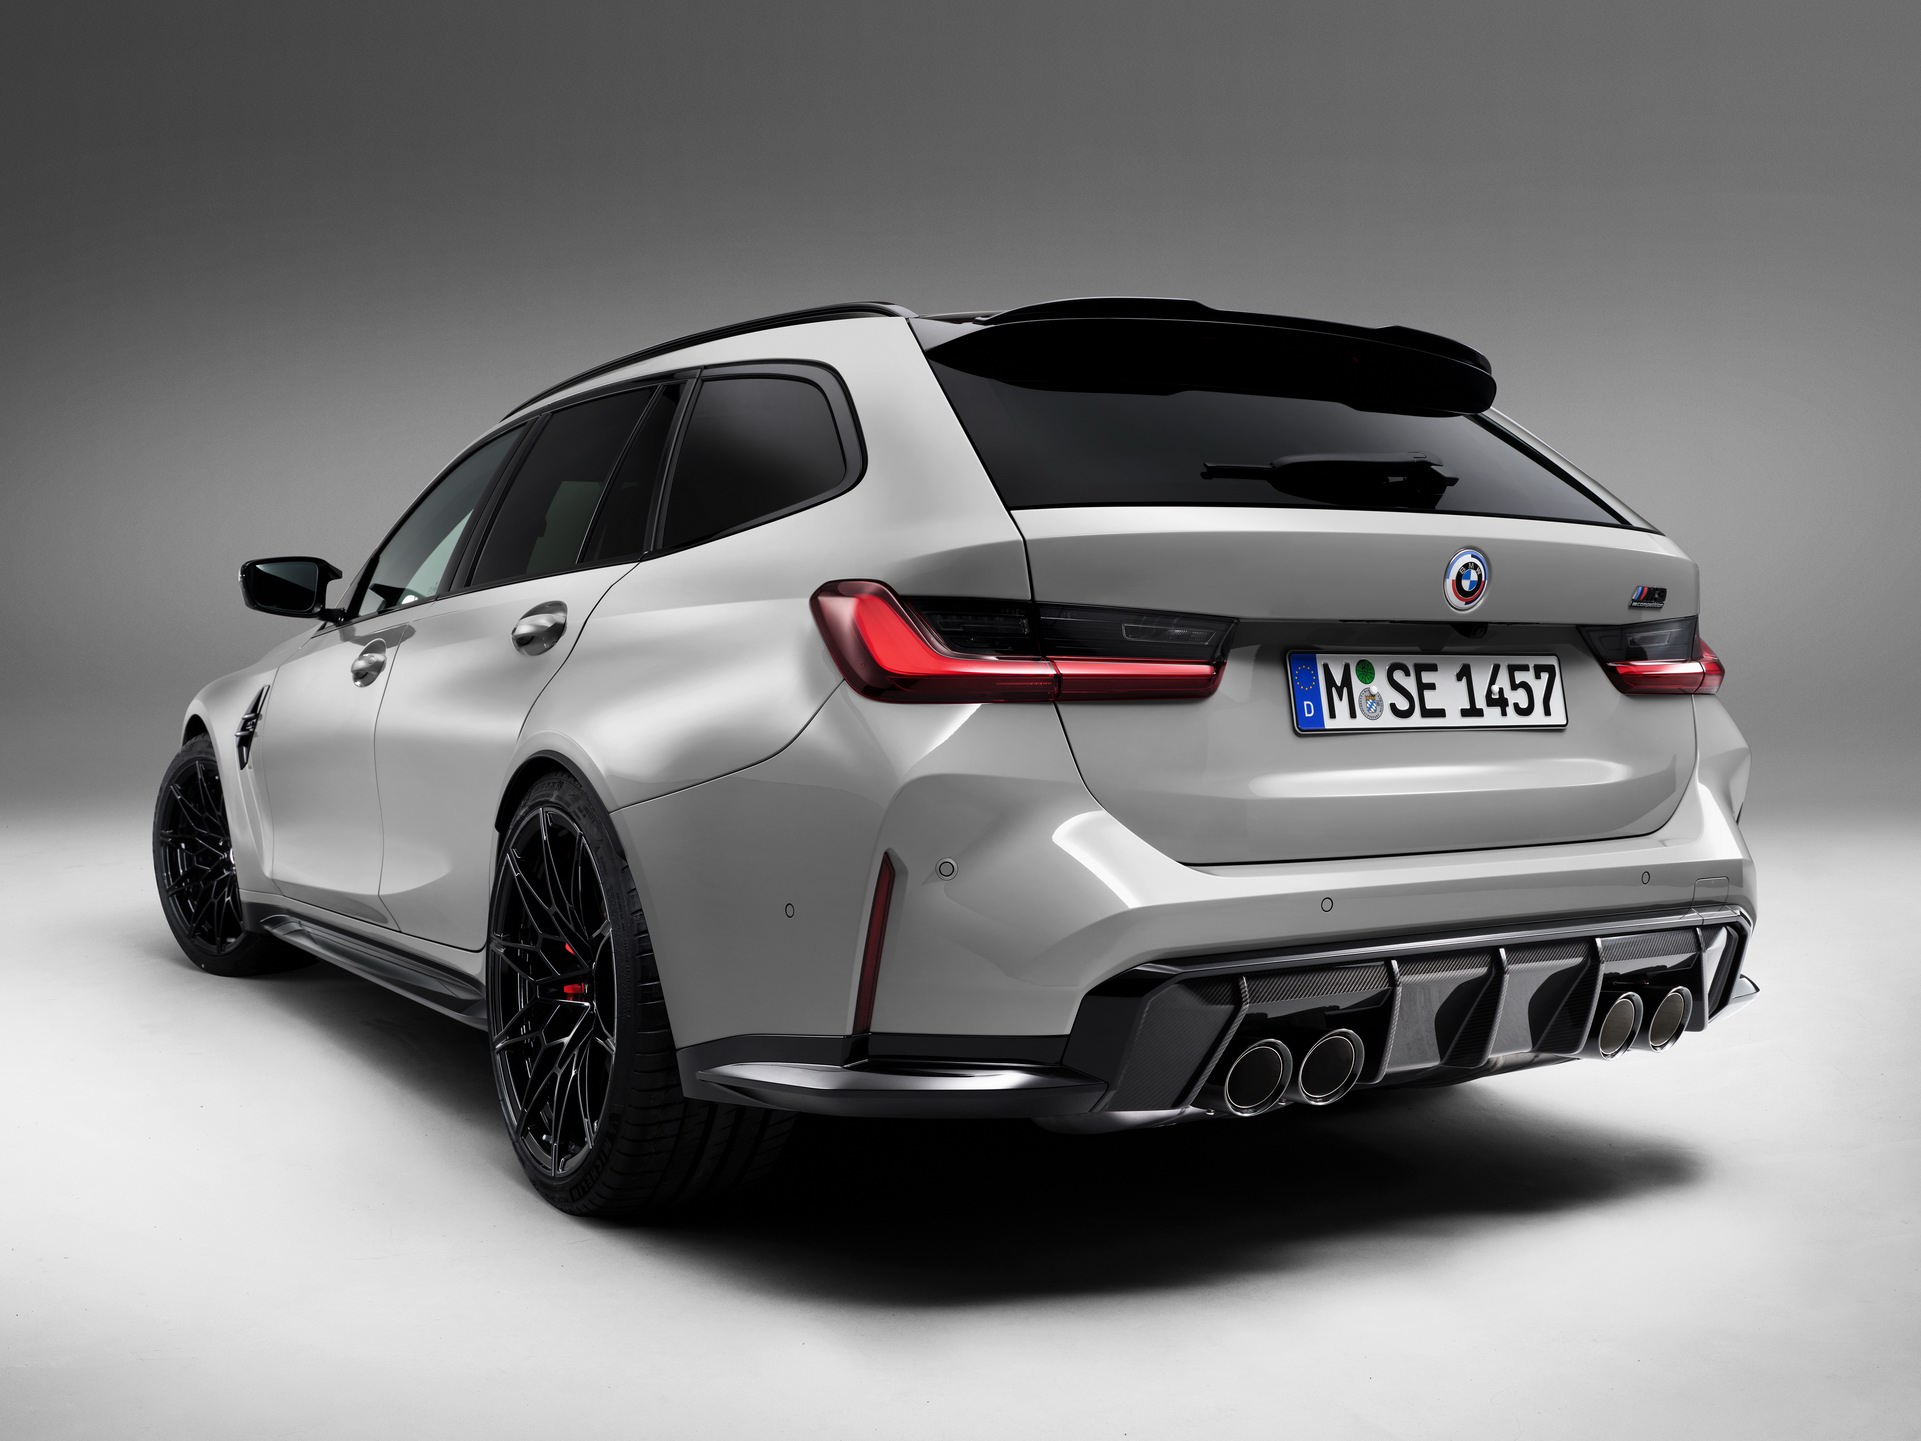 2023 BMW M3 Touring tanıtıldı: 503 hp güç, dört tekerlekten çekiş, 280 km/s son hız